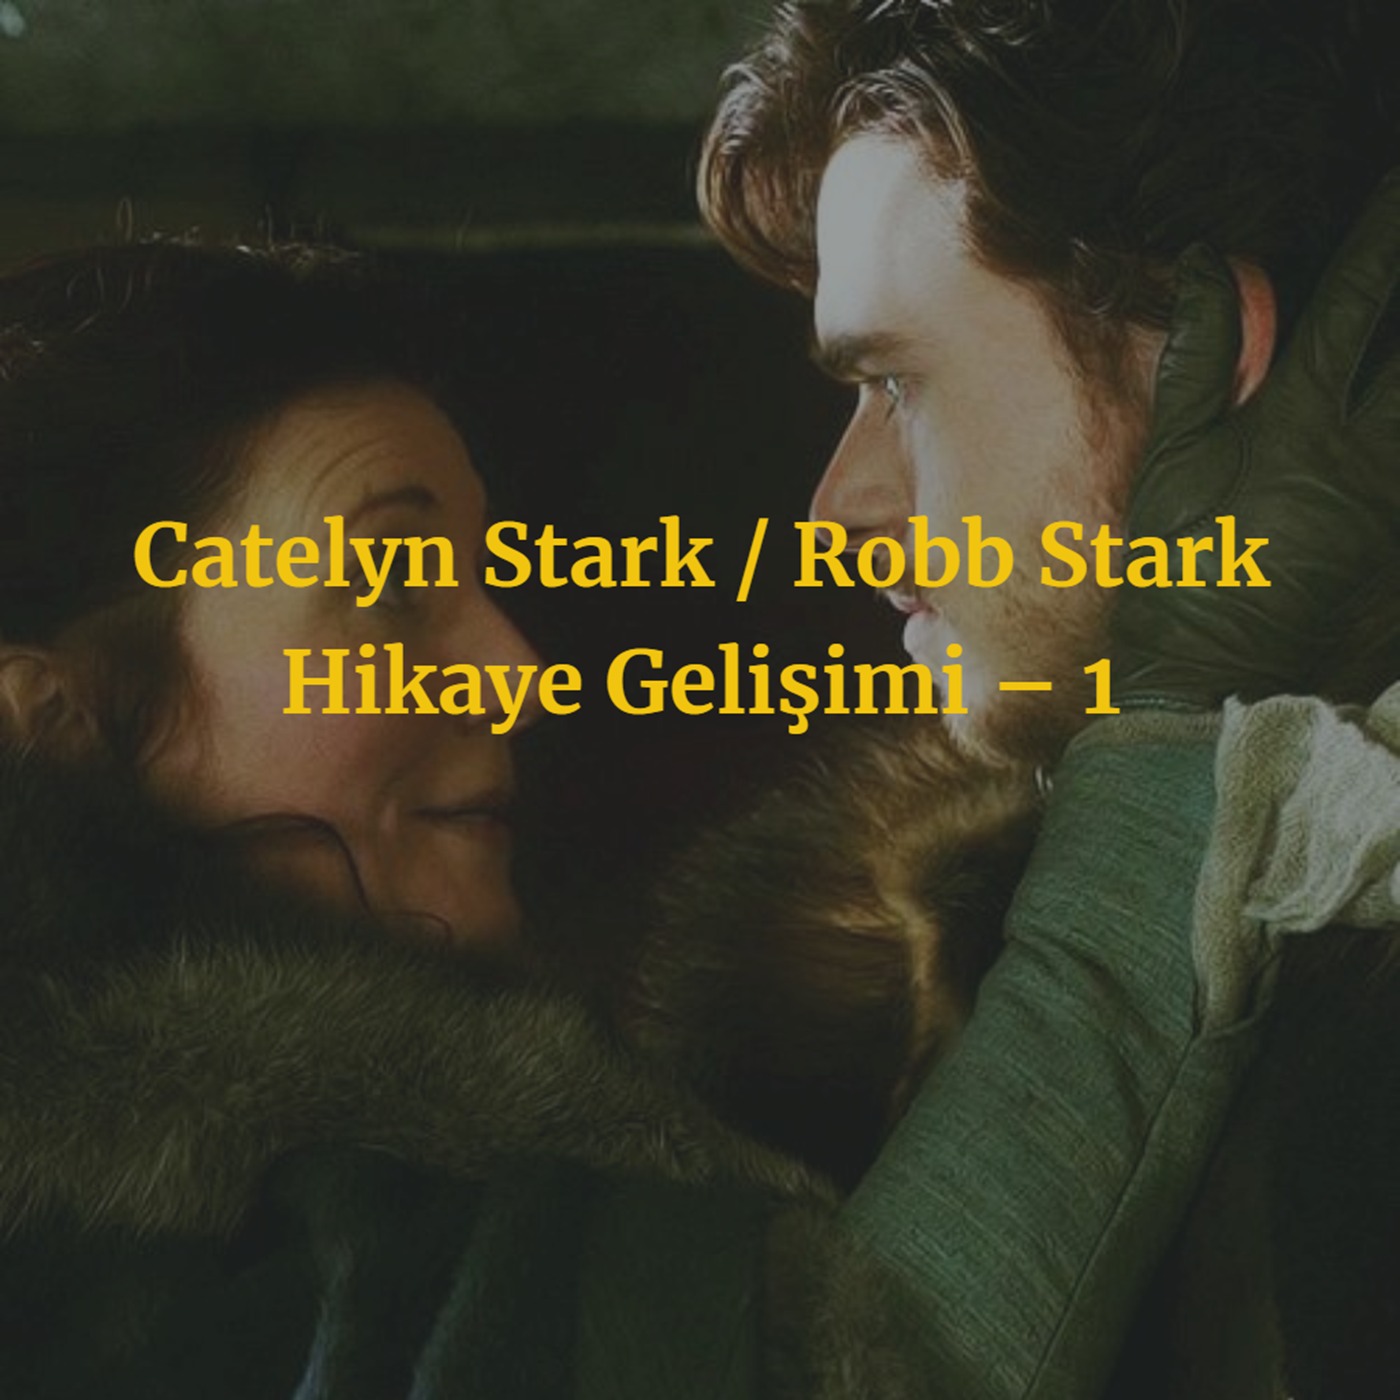 Catelyn Stark / Robb Stark Hikaye Gelişimi – 1